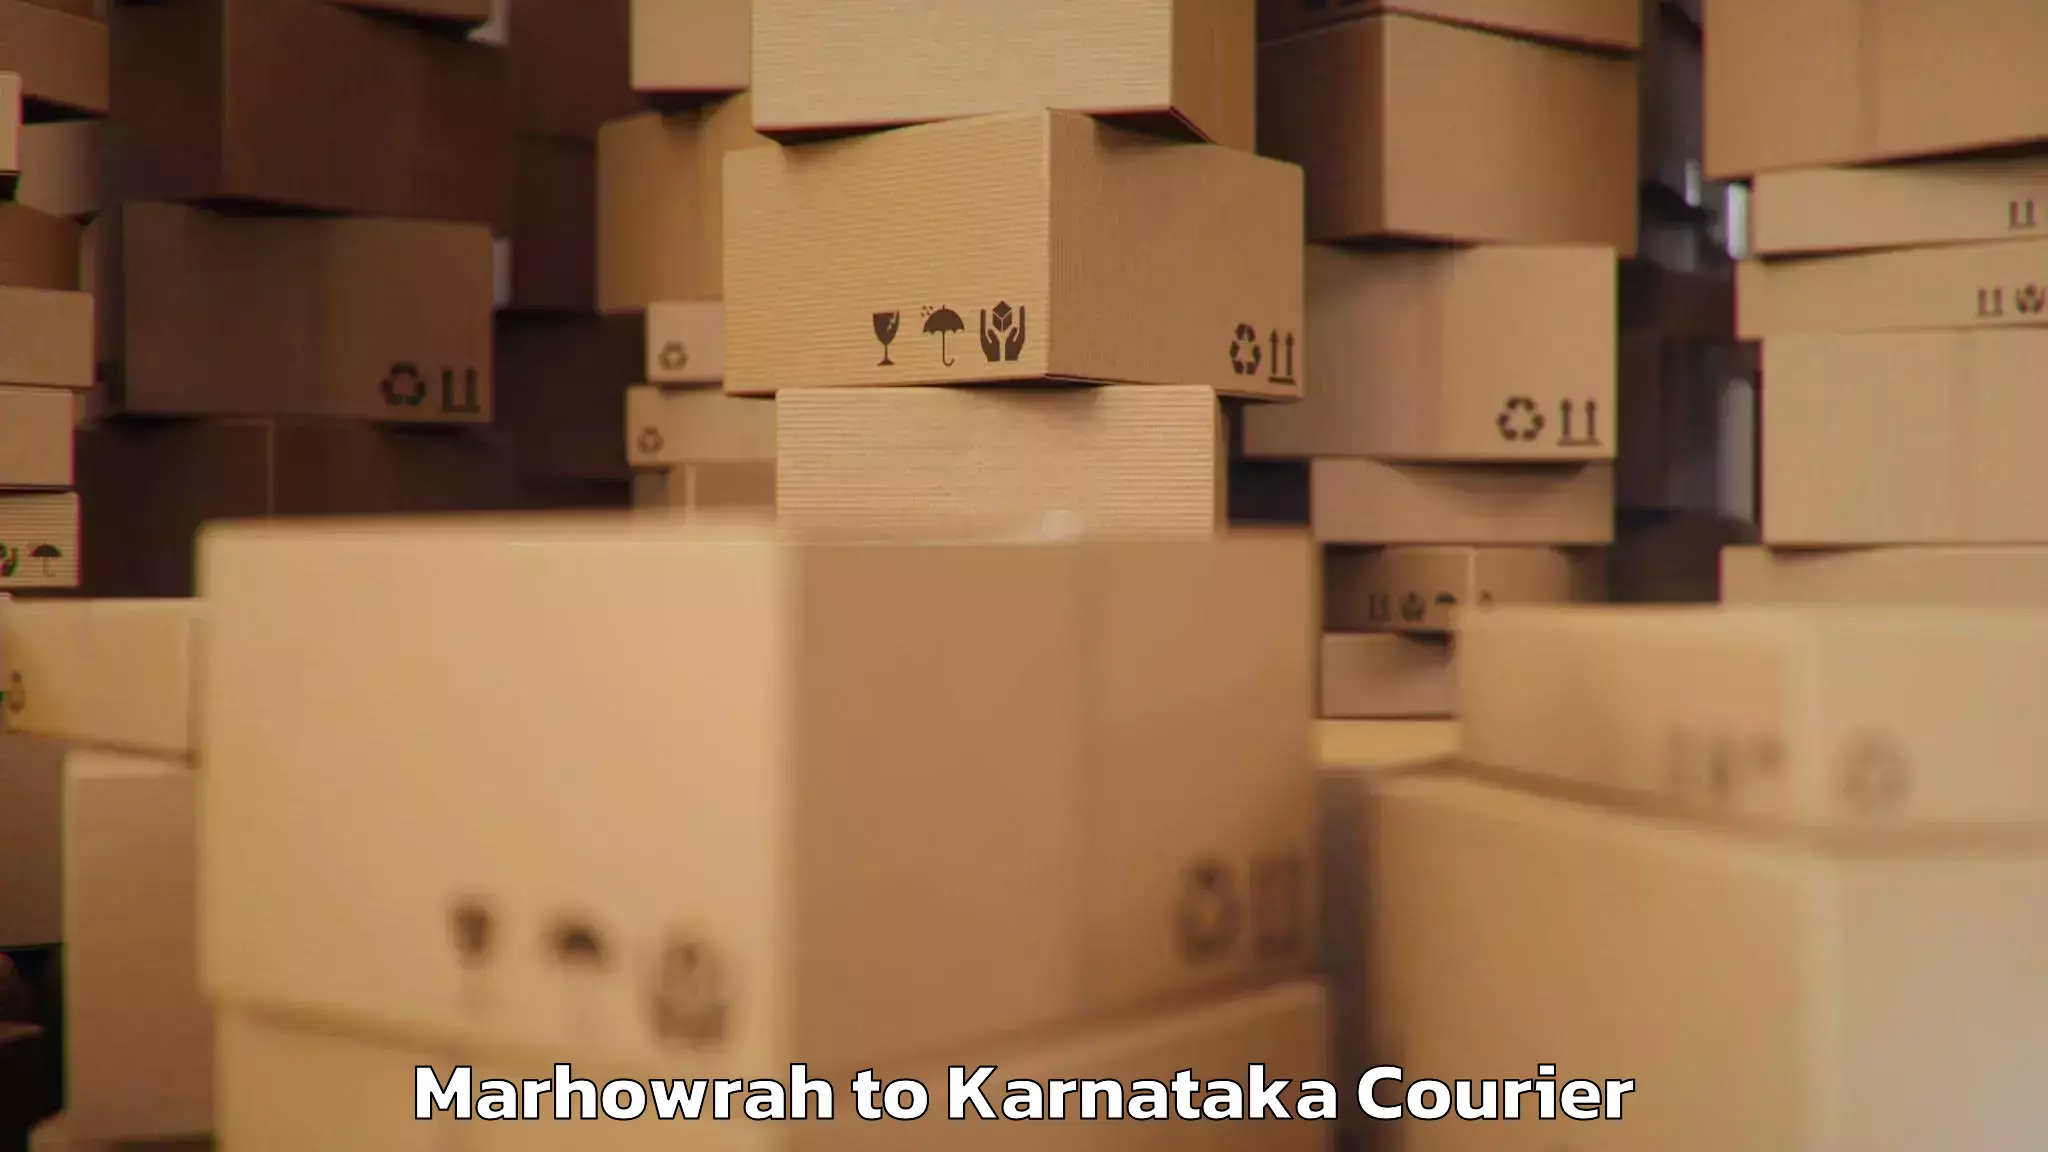 Baggage delivery technology Marhowrah to Karnataka